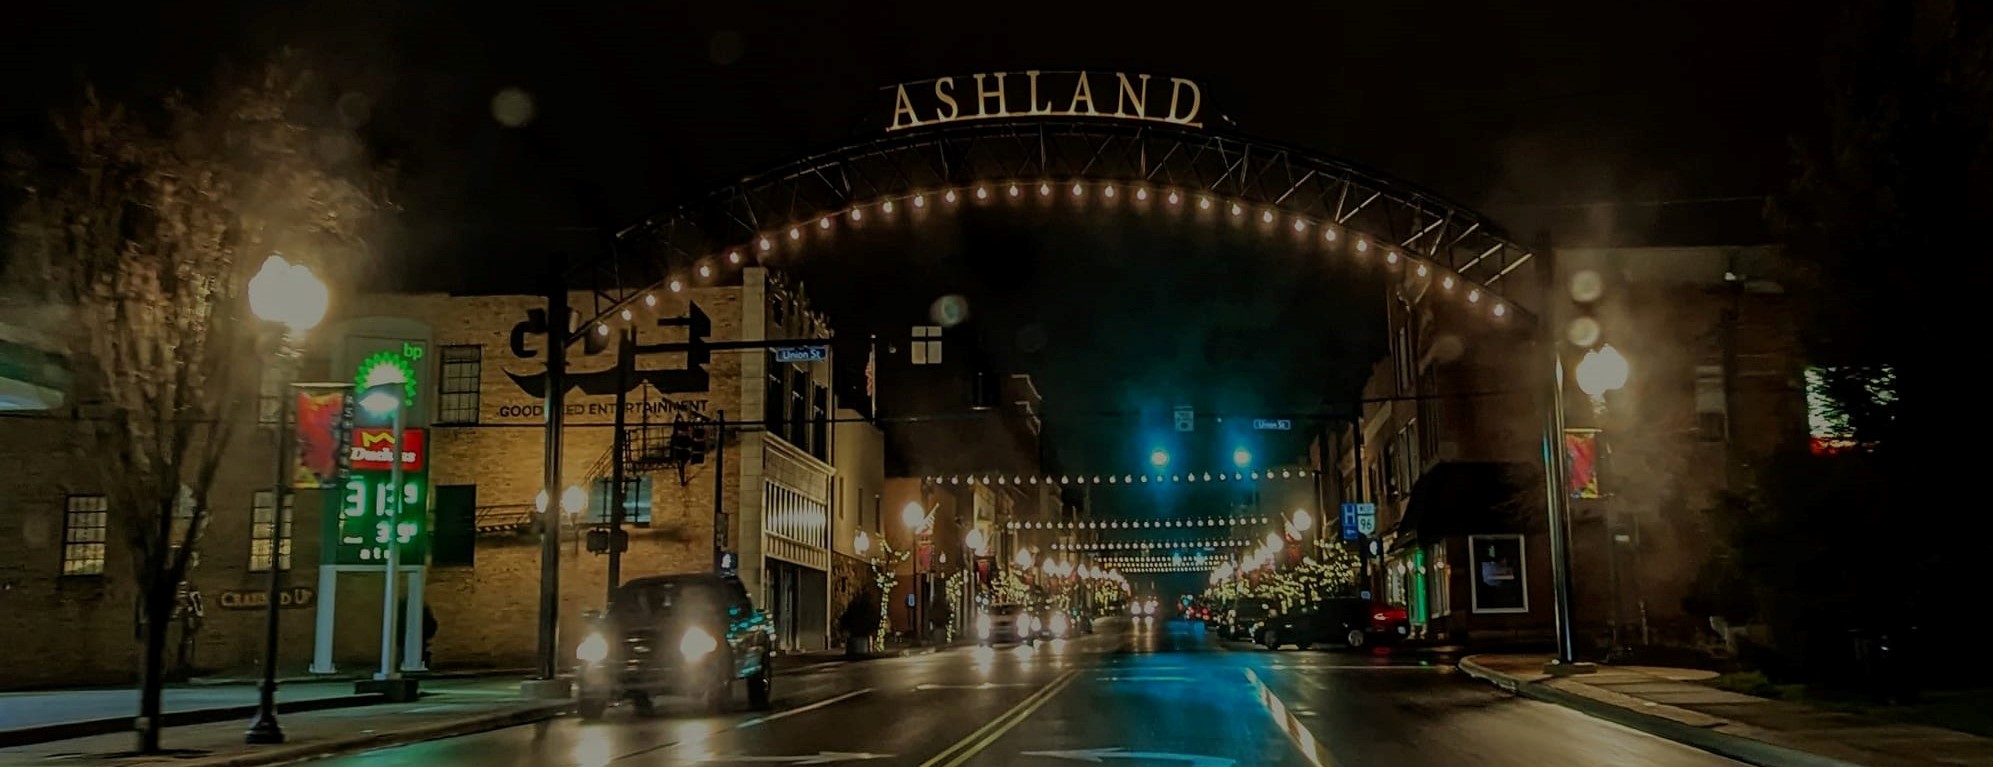 Ashland Arch